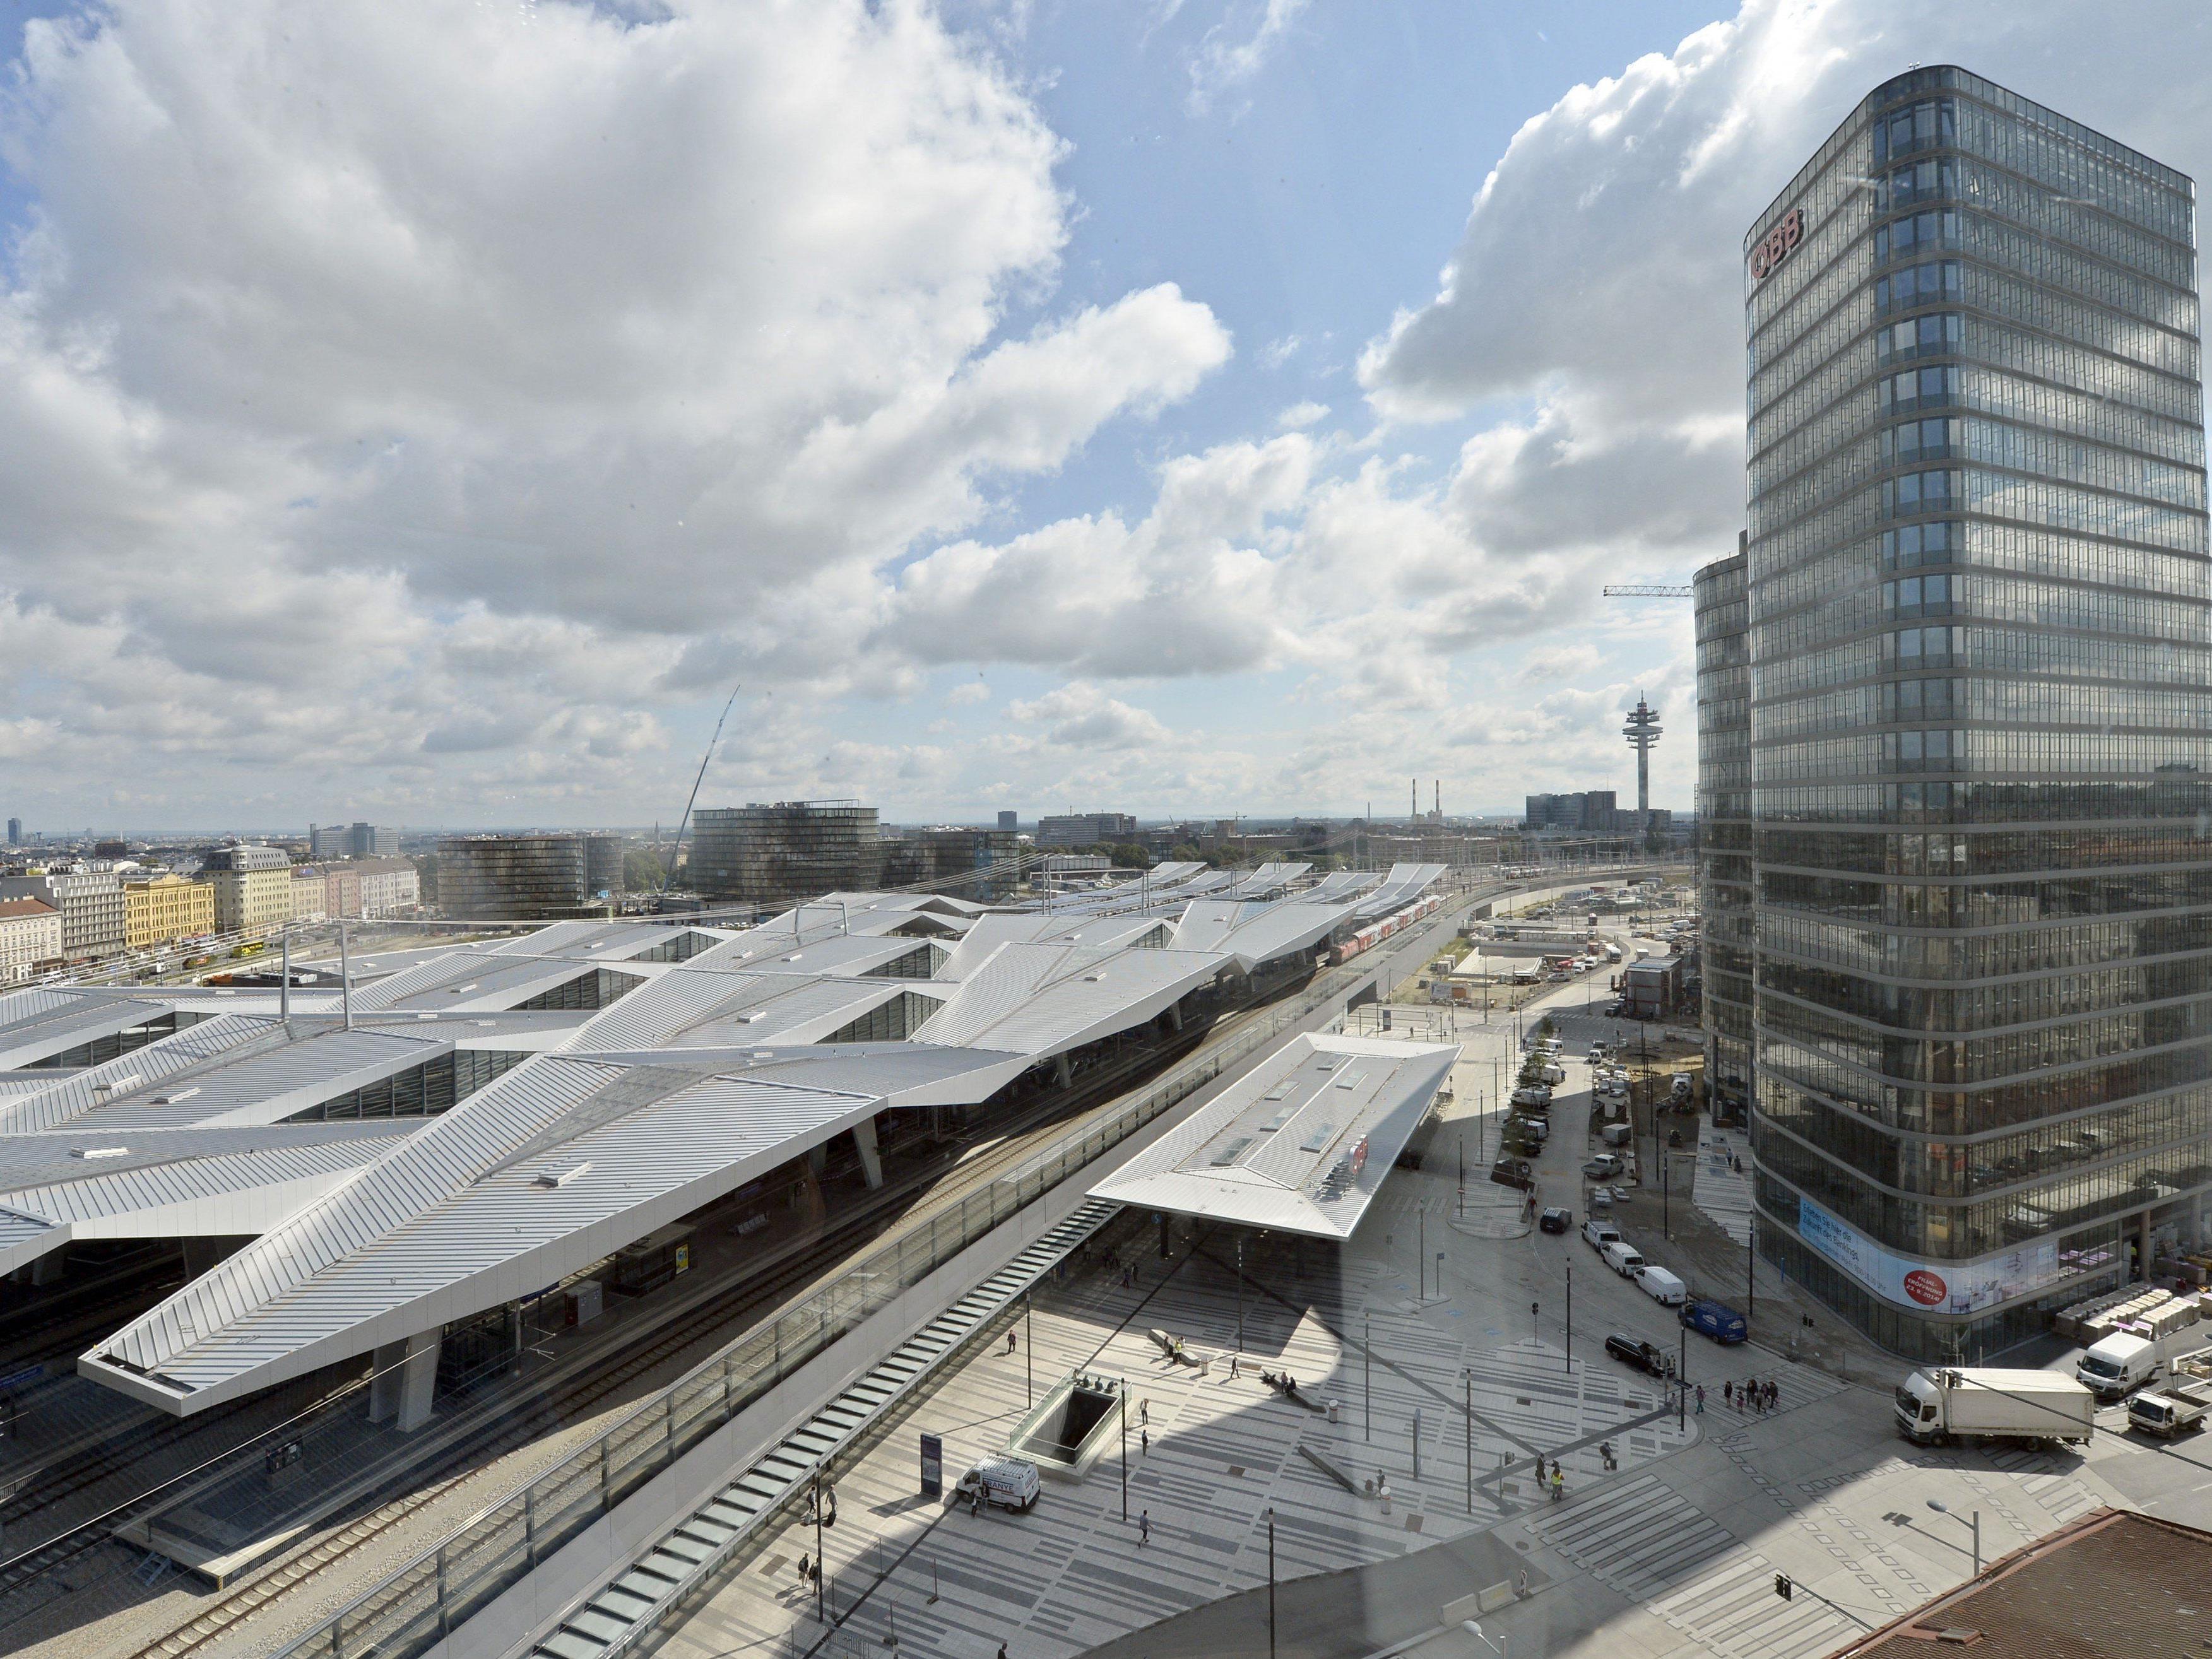 Neuer Wiener Hauptbahnhof erhält multikonfessionellen Gebetsraum